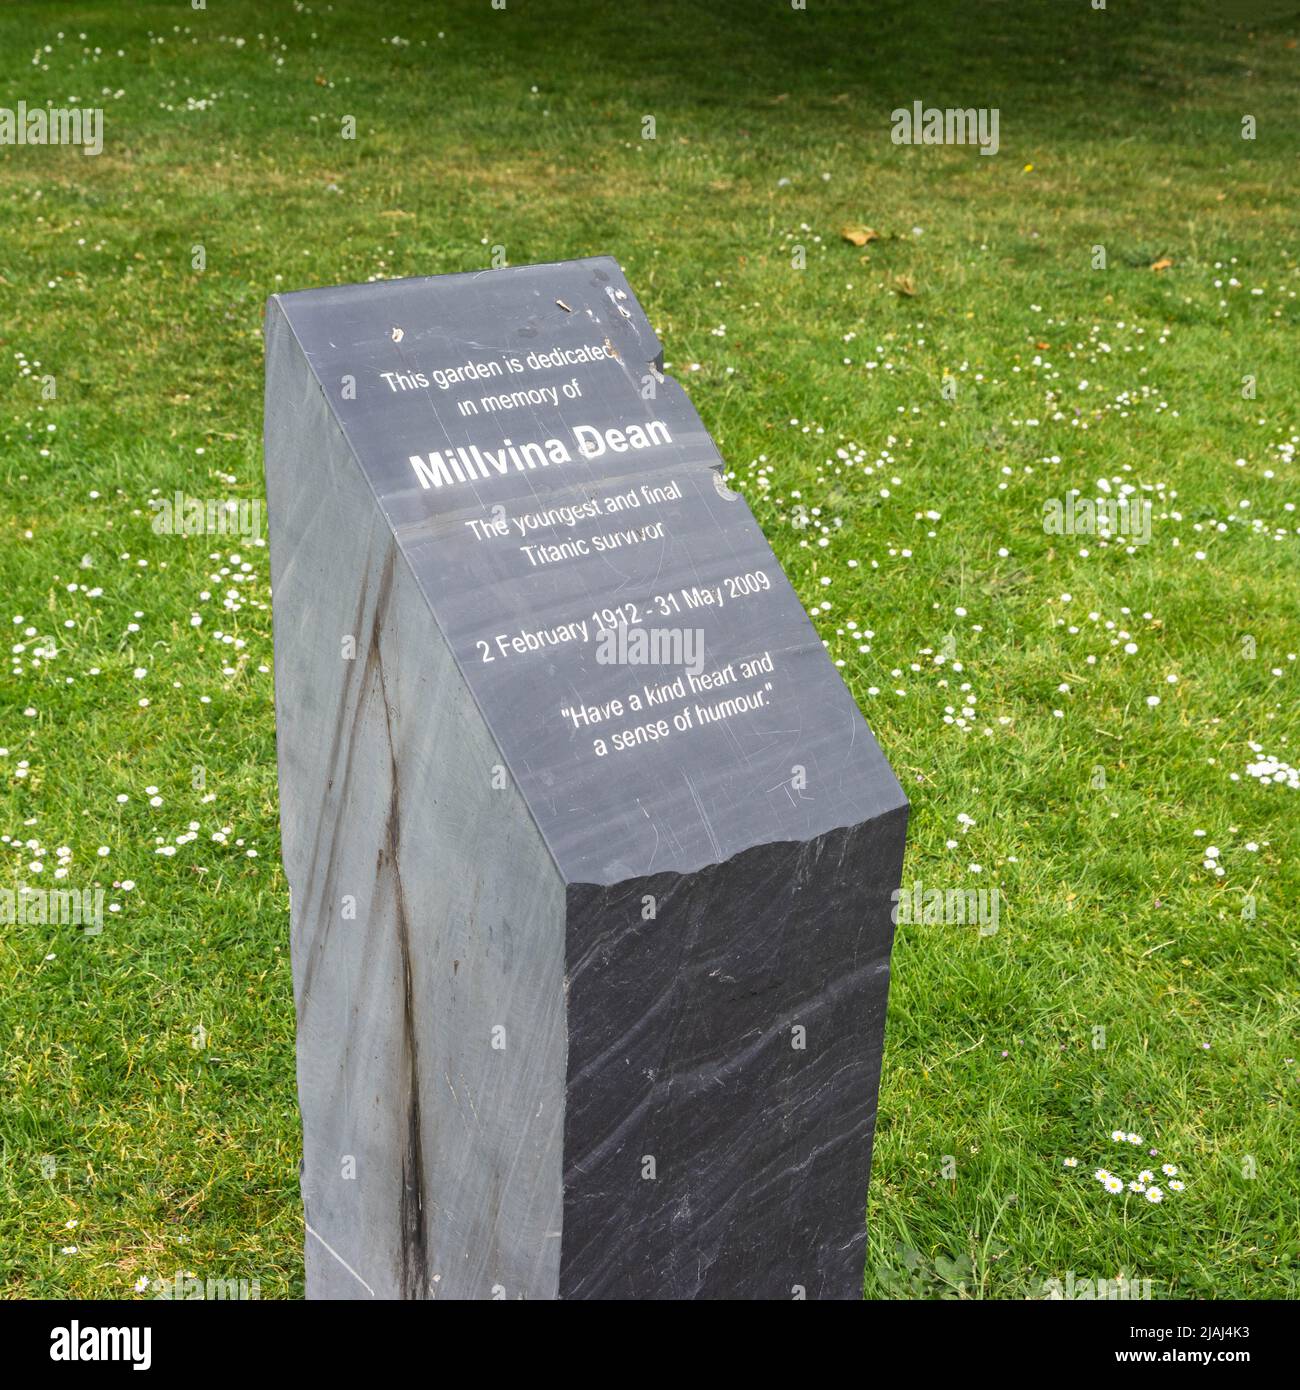 Pierre commémorative du doyen de Millvina dernier survivant de la catastrophe du Titanic au jardin commémoratif du doyen de Millvina à Southampton, Hampshire, Angleterre, Royaume-Uni Banque D'Images